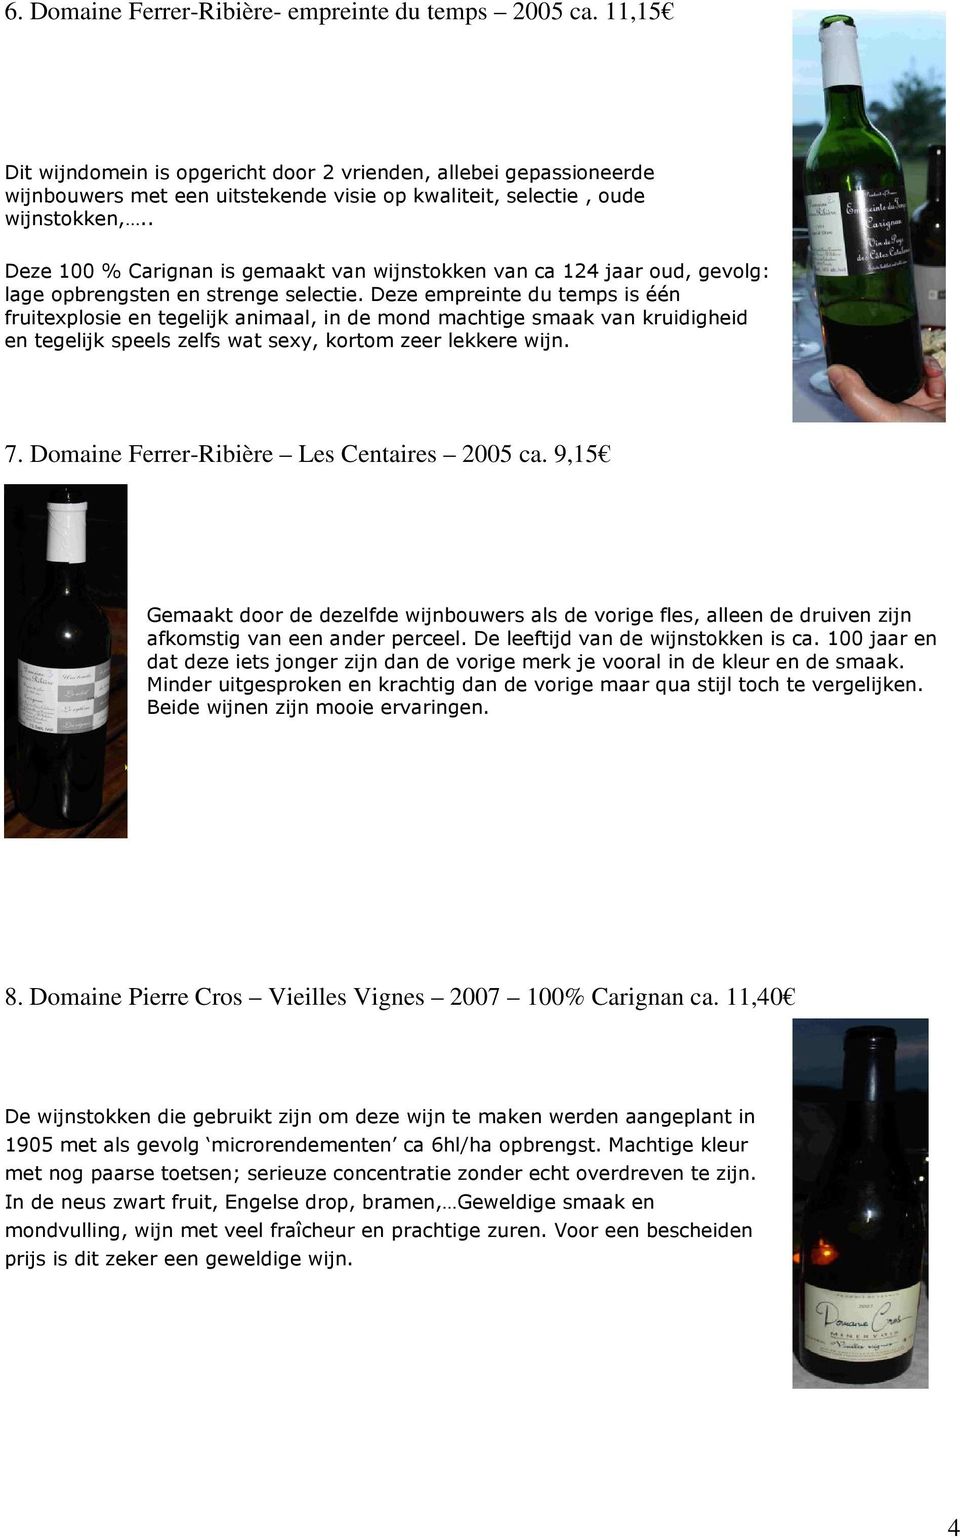 . Deze 100 % Carignan is gemaakt van wijnstokken van ca 124 jaar oud, gevolg: lage opbrengsten en strenge selectie.